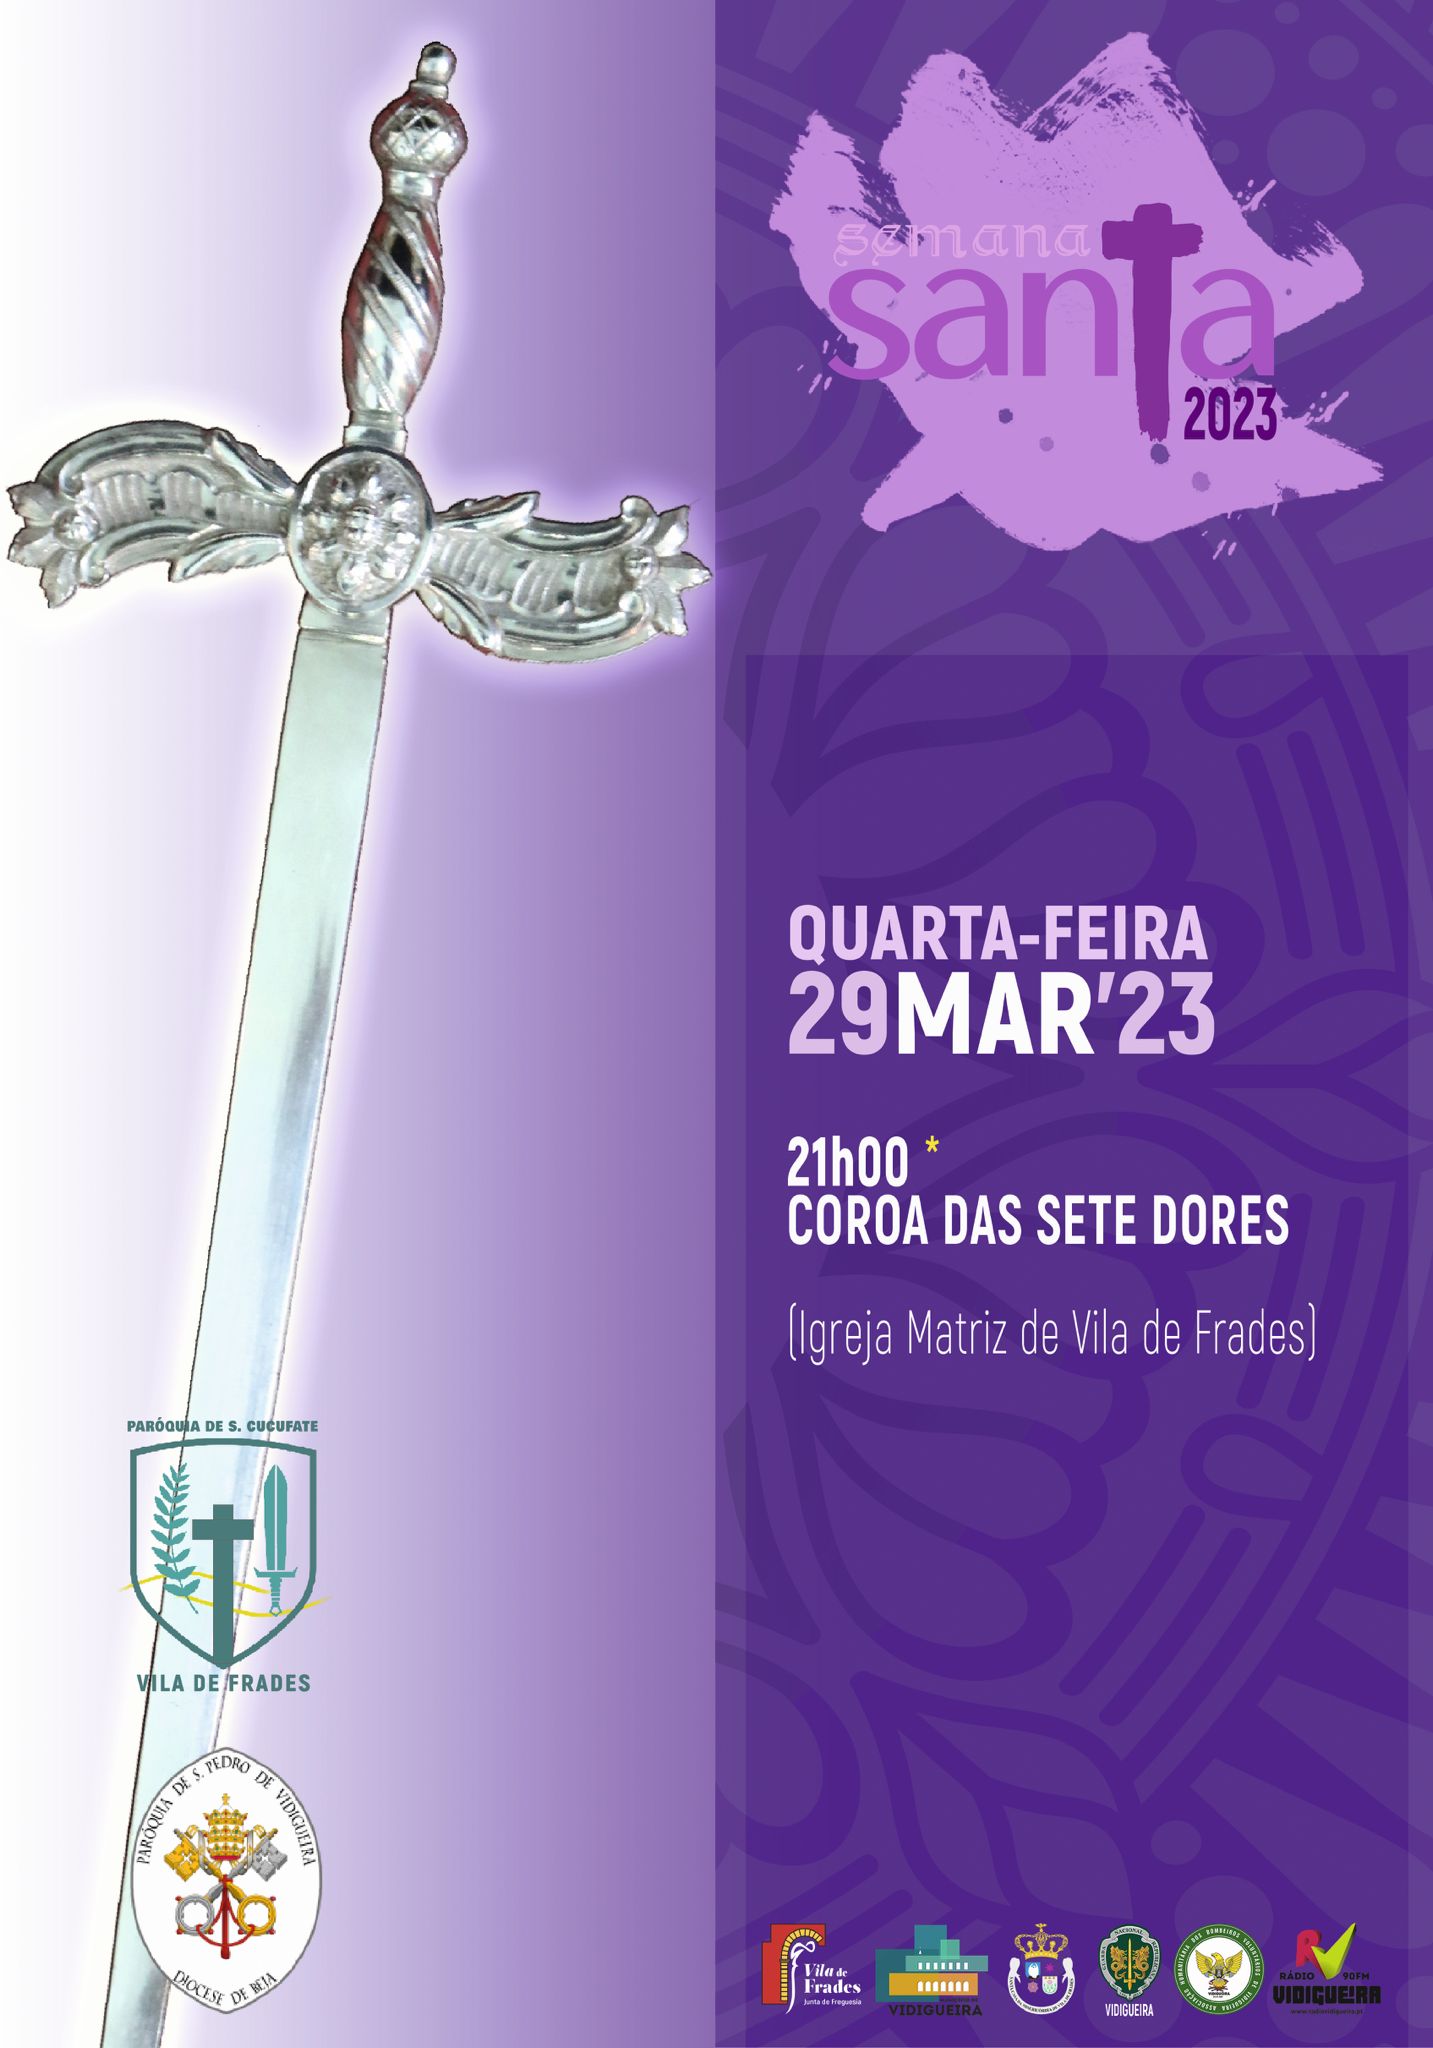 Cartaz das Festividades da Semana Santa 2023 para o dia 29 de Março